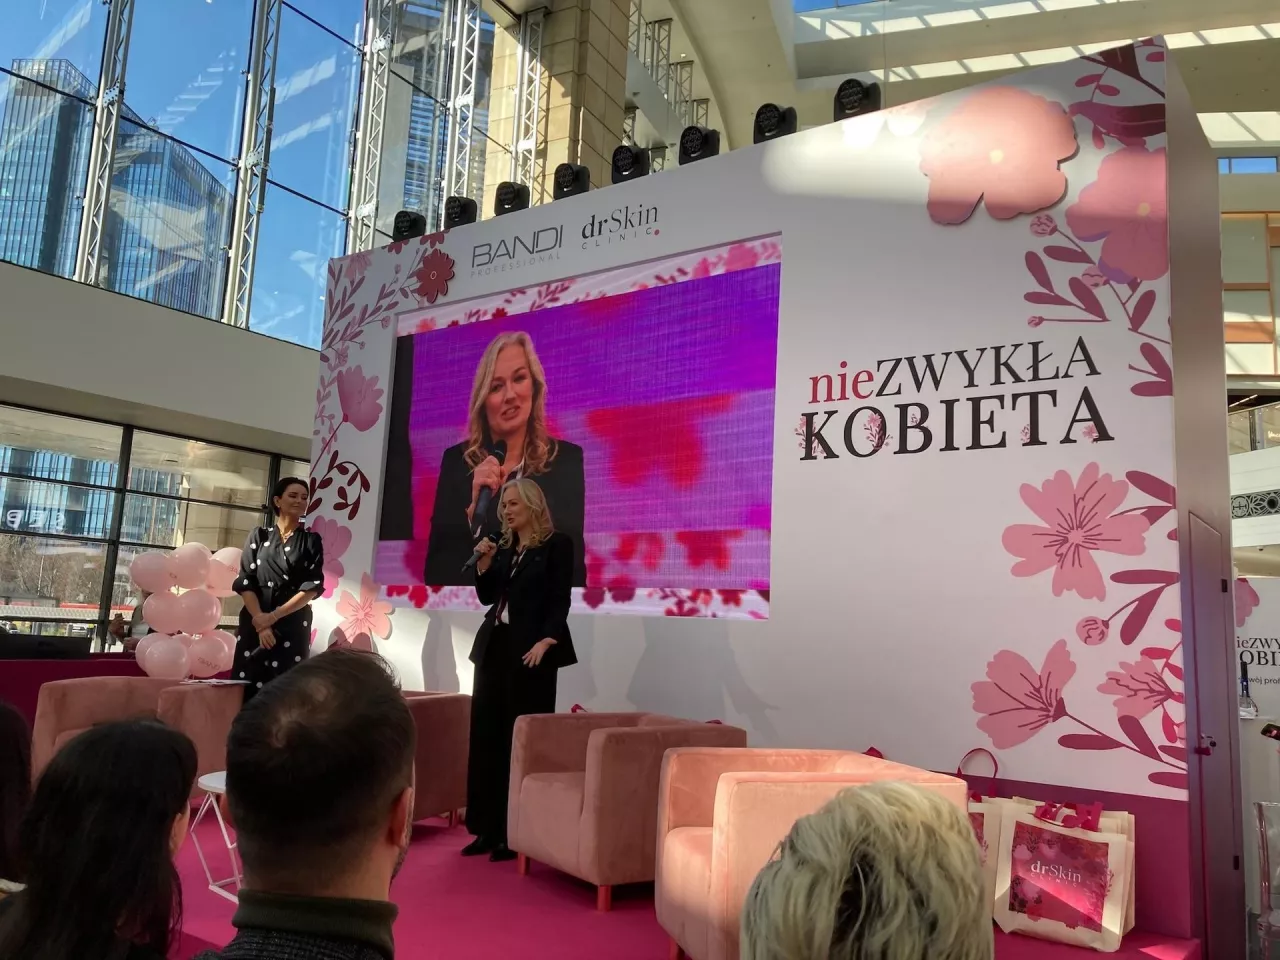 &lt;p&gt;Marka Bandi zorganizowała w warszawskim centrum handlowym event promocyjny o tematyce pielęgnacji kwasami.&lt;/p&gt;